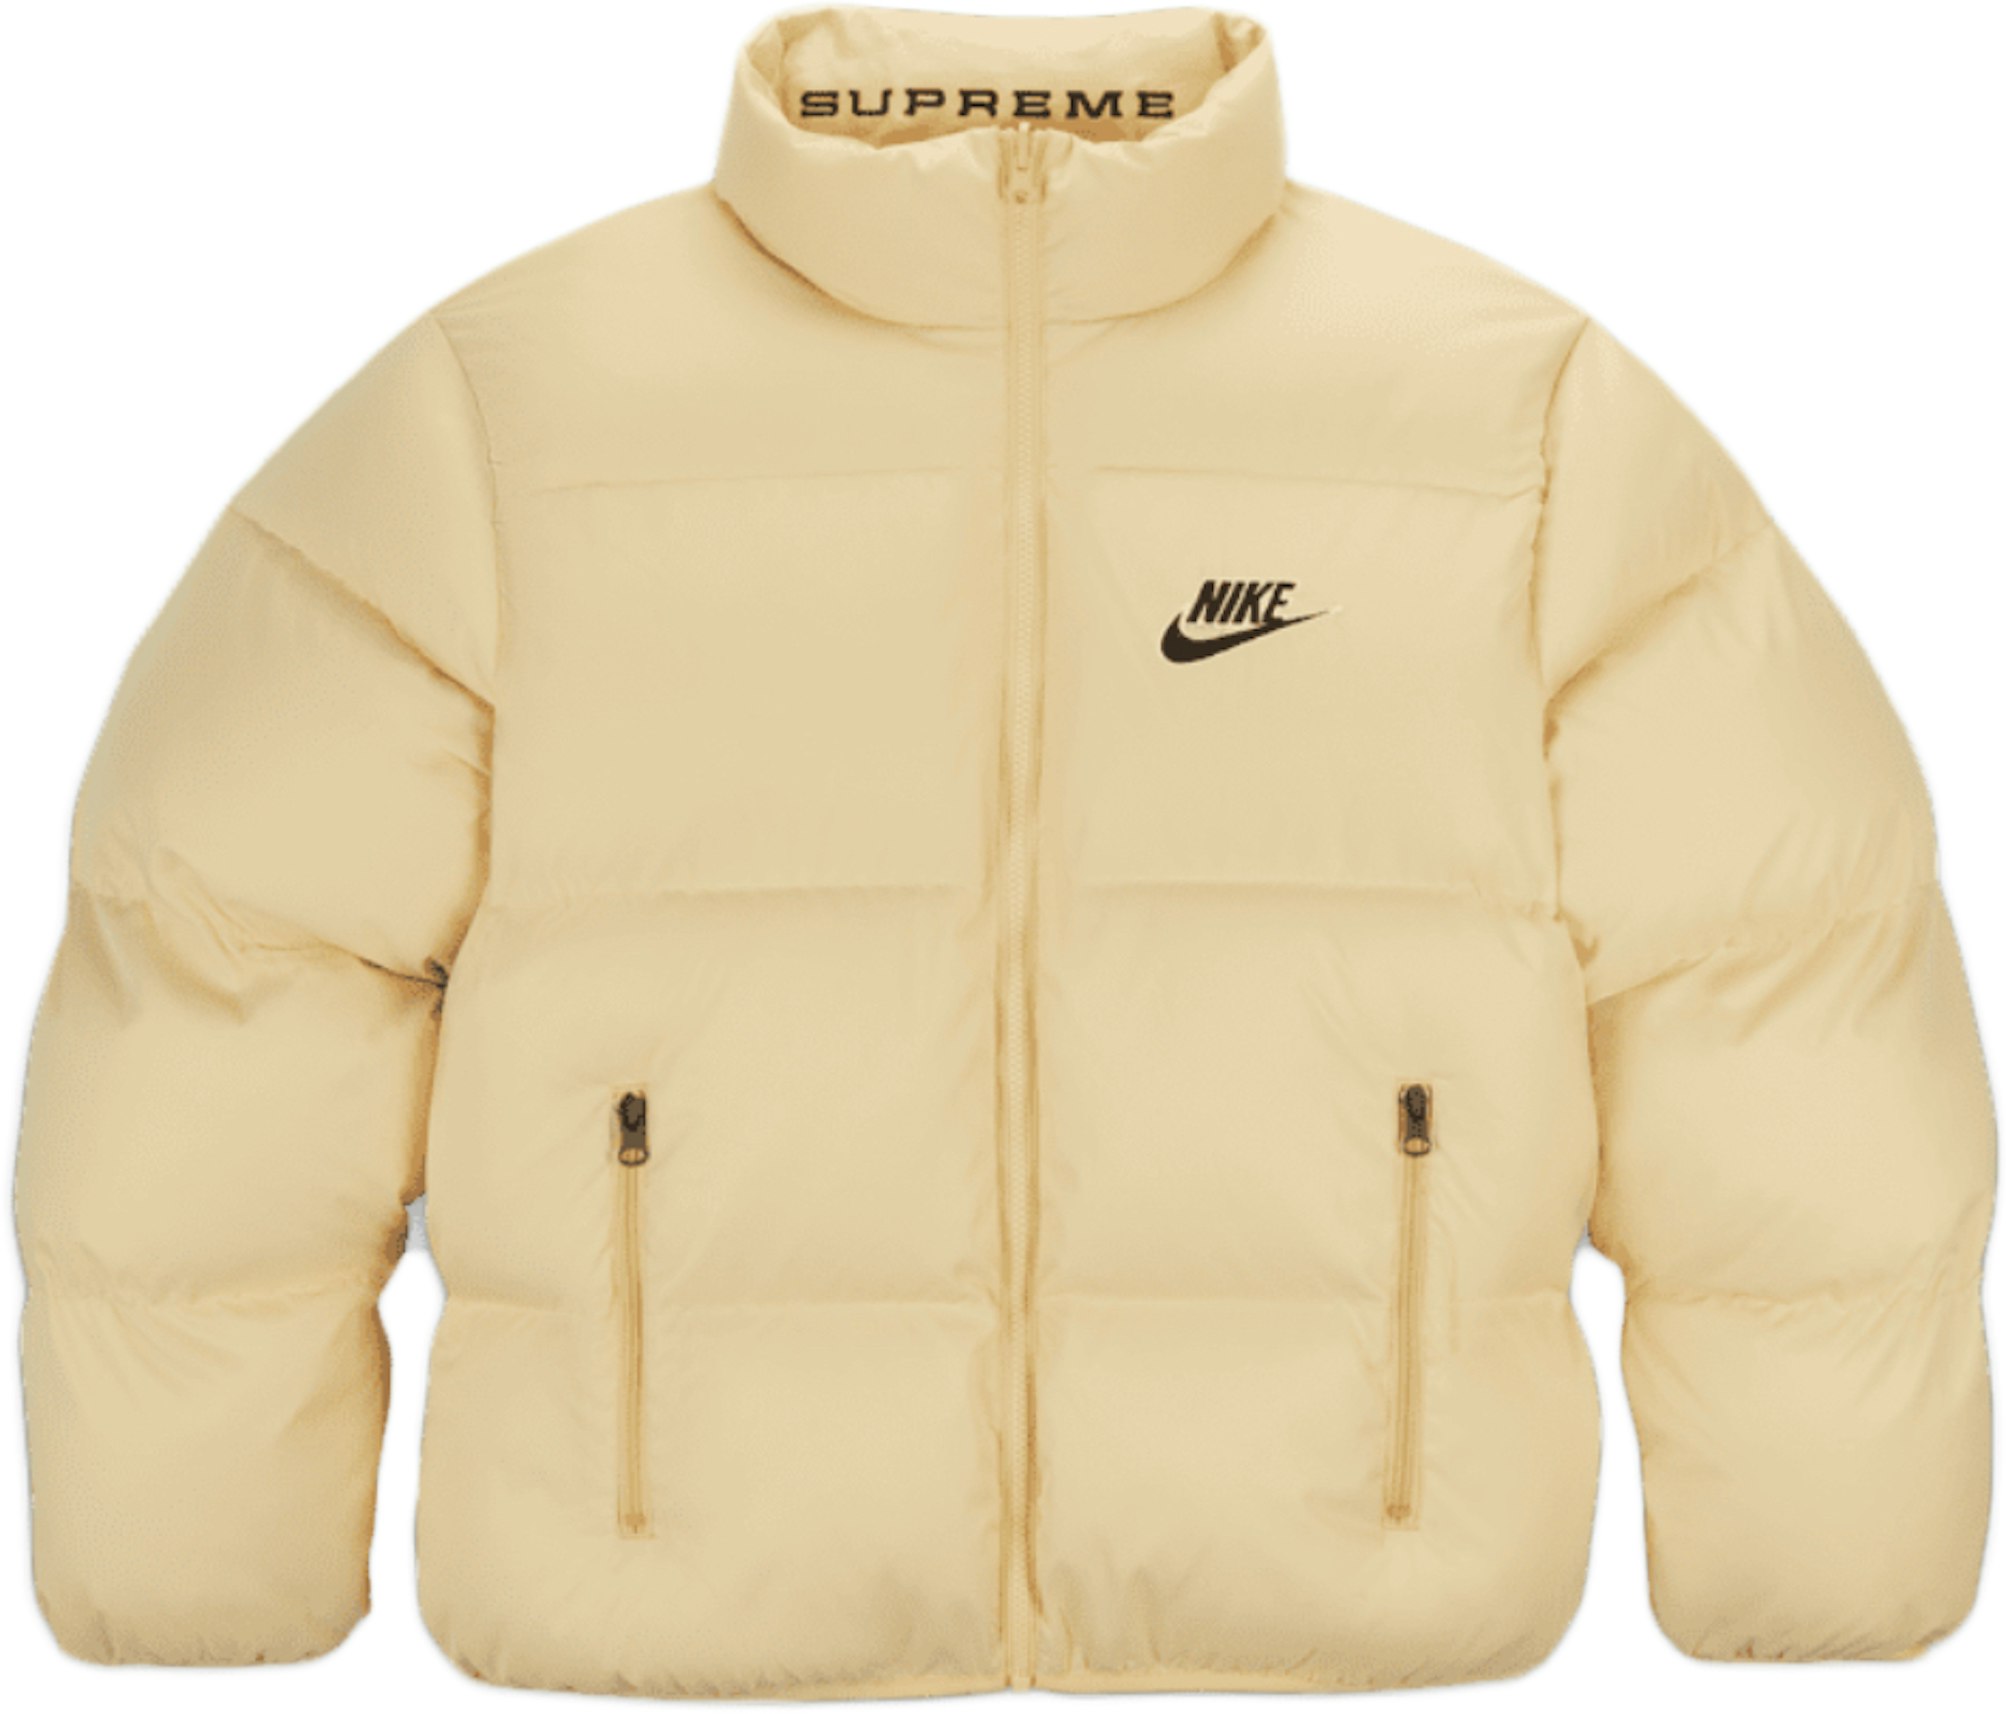 platform Dokter Buik Supreme Nike Reversible Puffy Jacket Pale Yellow - SS21 Men's - US